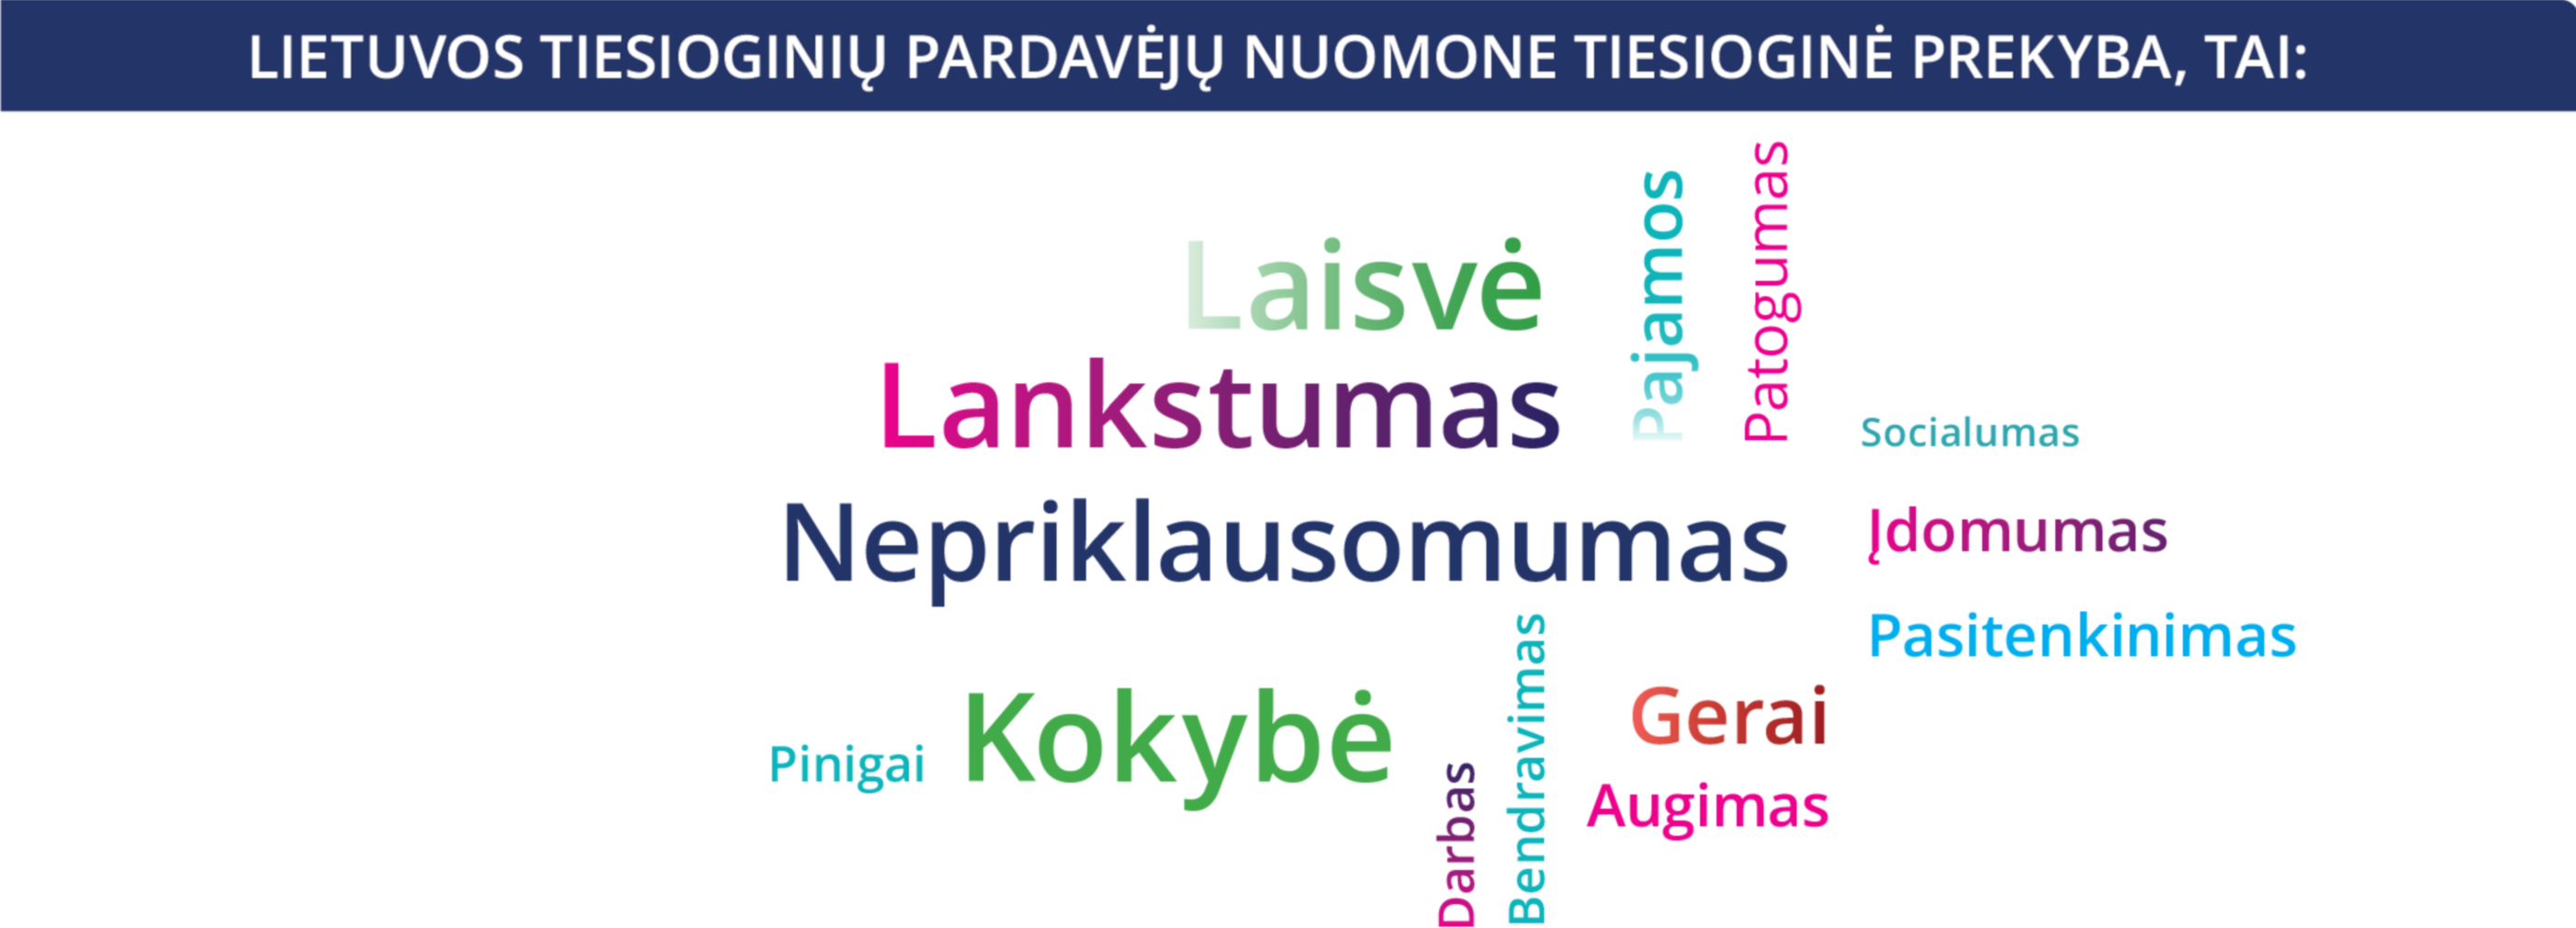 COVID aktualijos verslui - Joniškio turizmo ir verslo informacijos centras